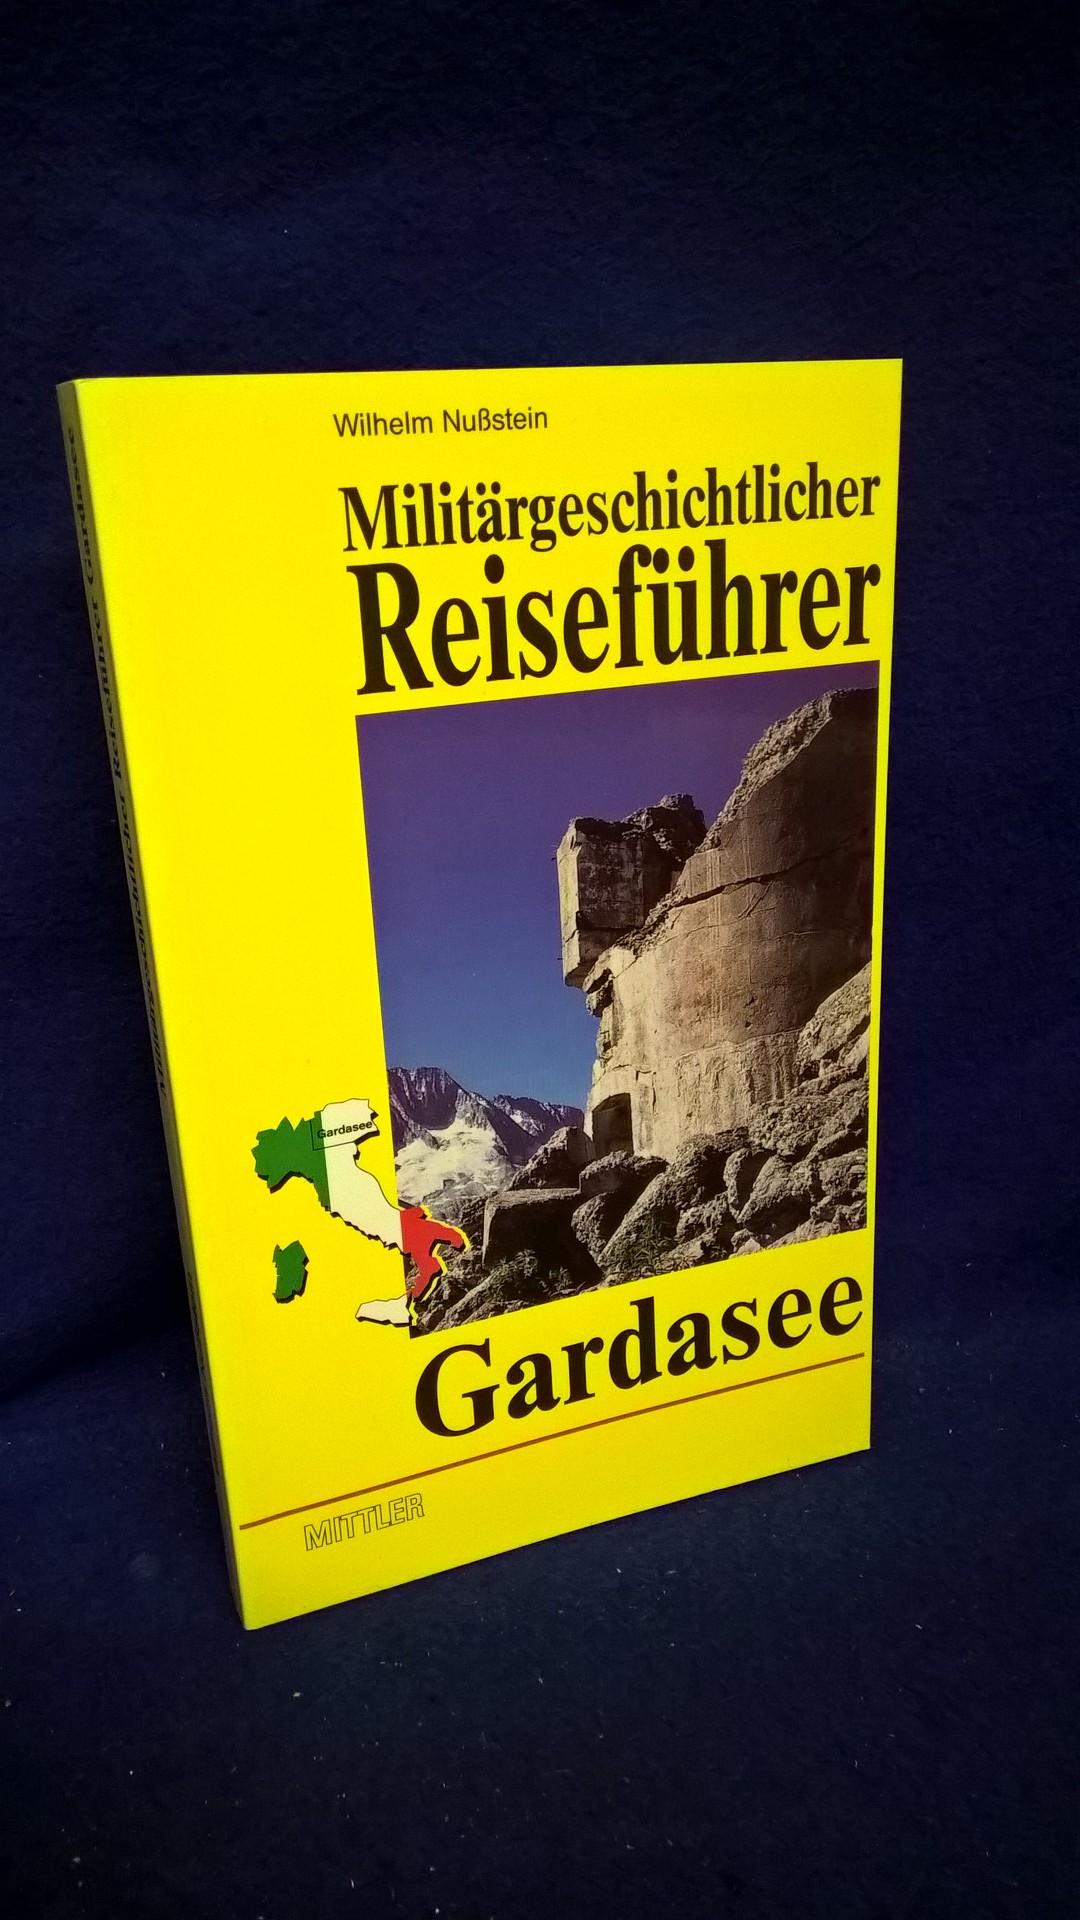 Militärgeschichtlicher Reiseführer Gardasee. Österreichische Festungen in Oberitalien von Nauders bis zum Gardasee. 